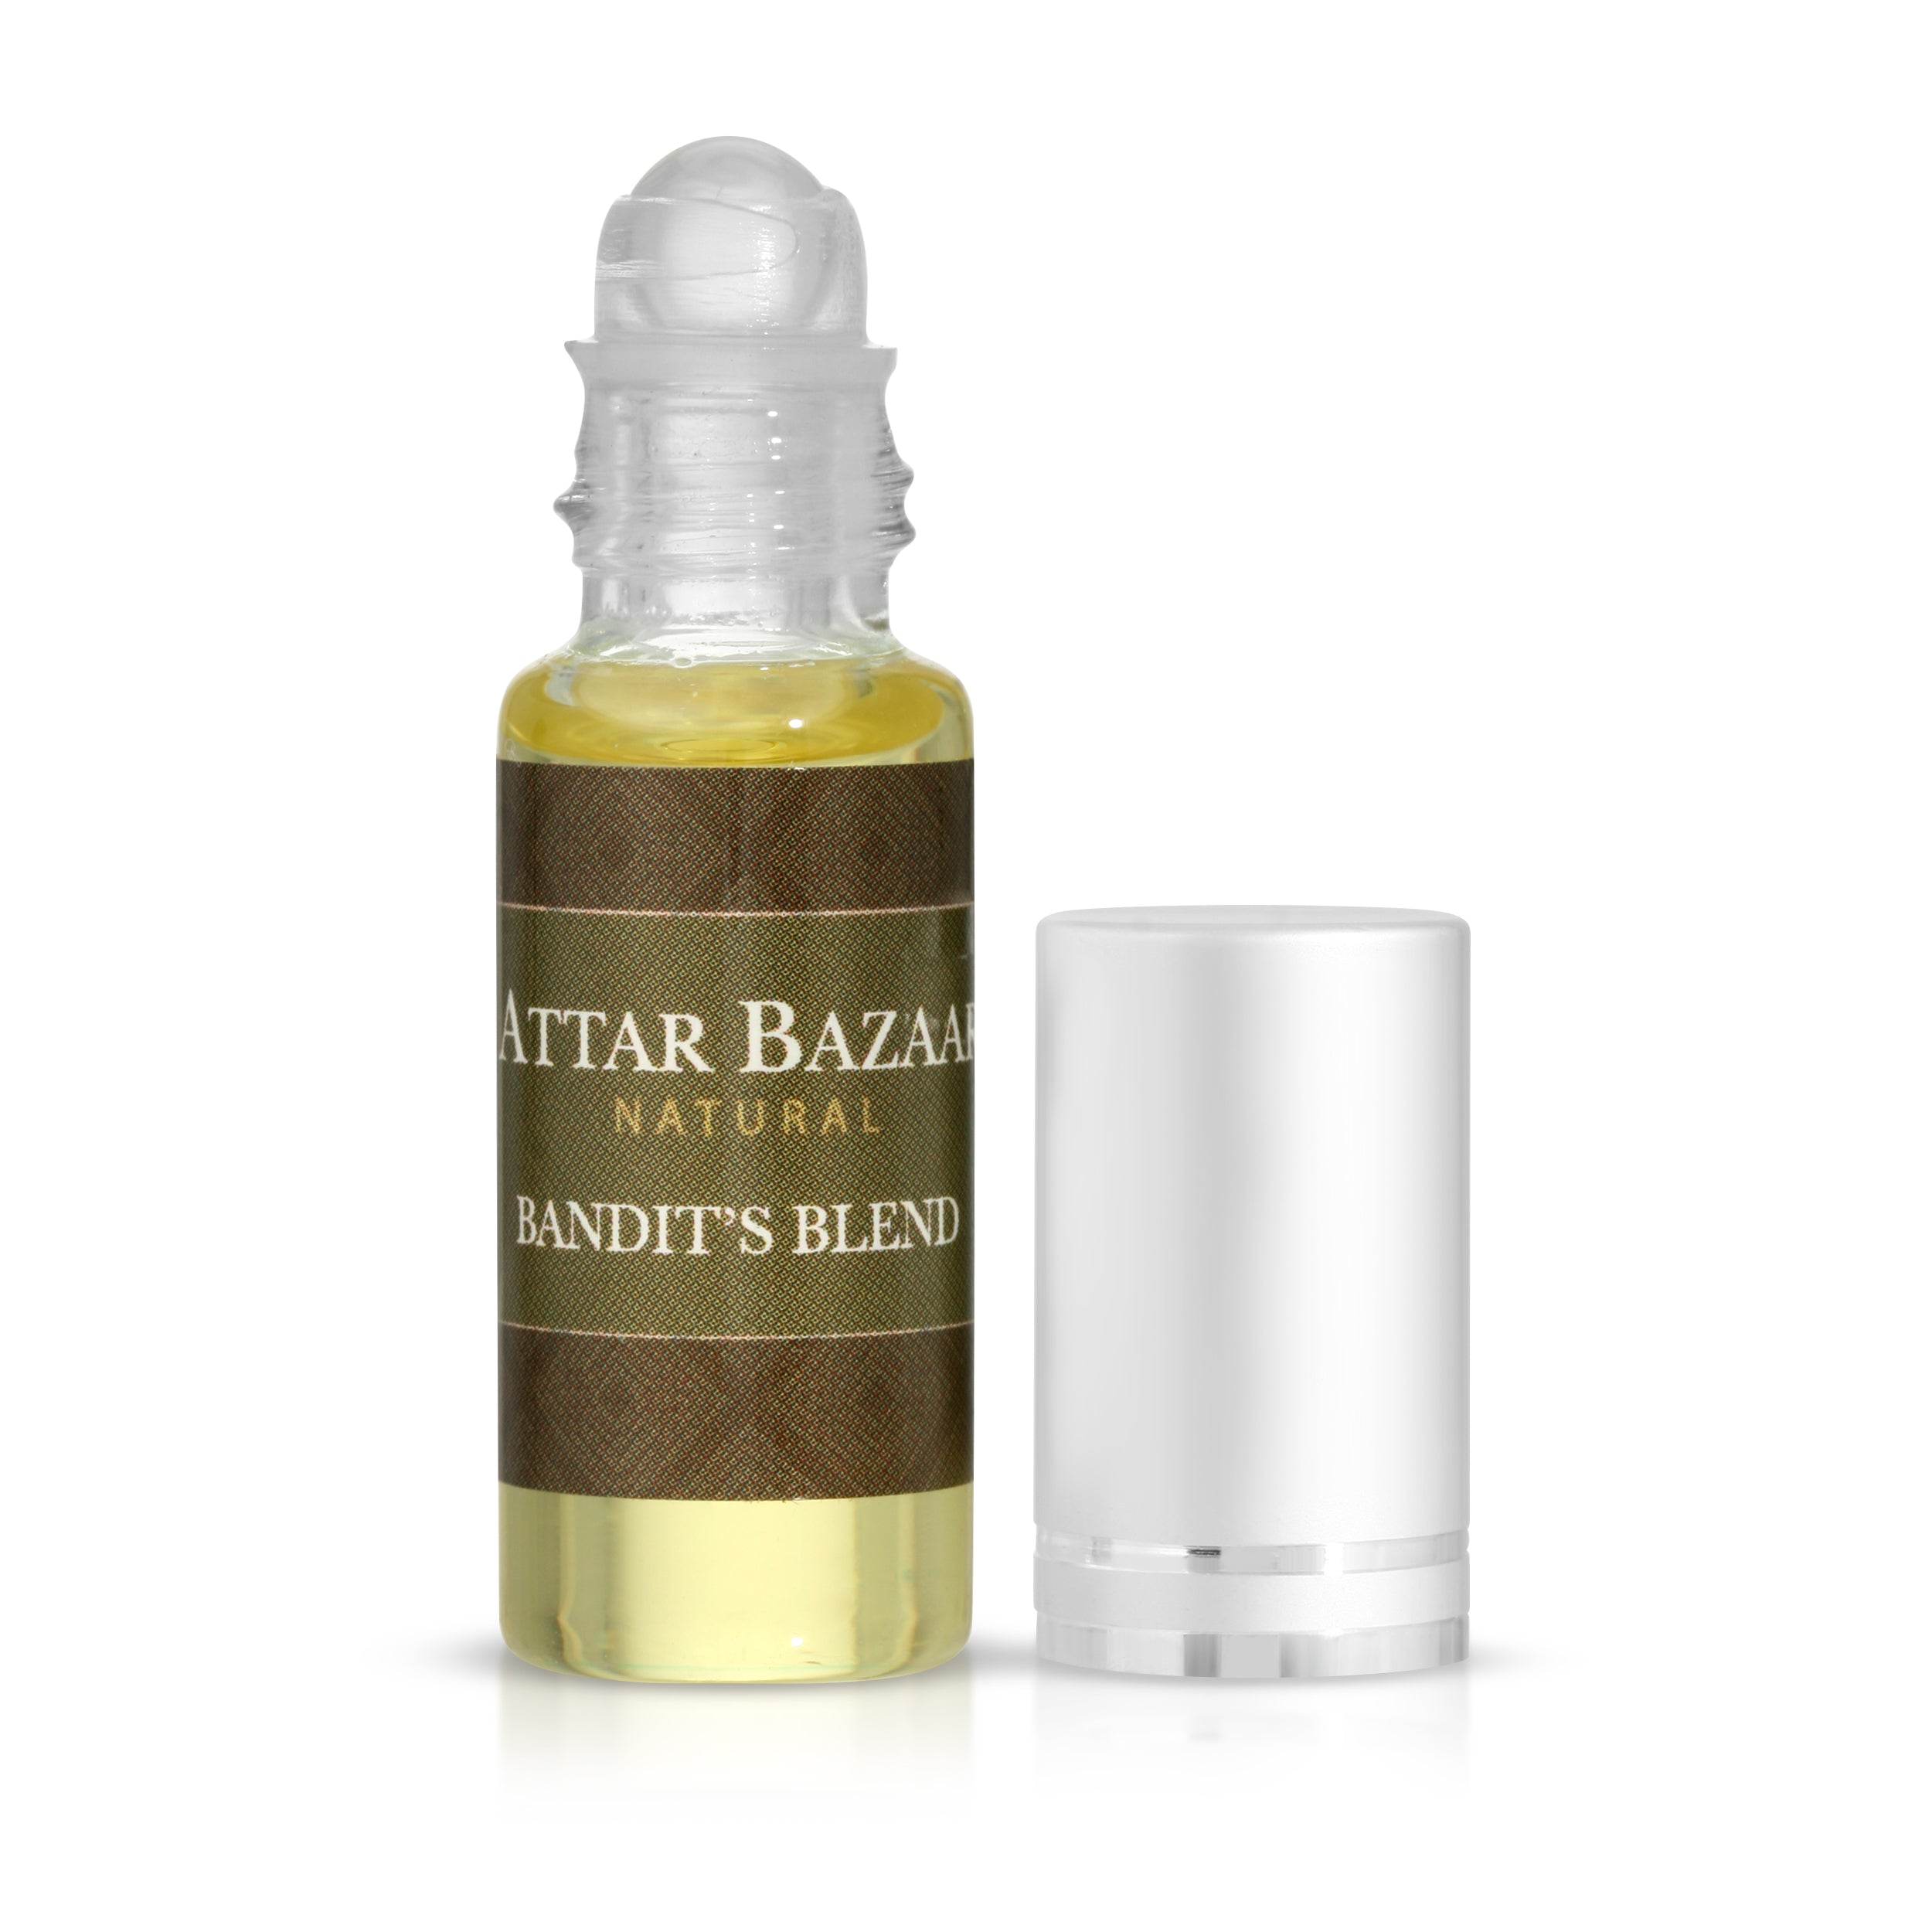 Attar Bazaar Bandit's Blend - Essential Oil Blend